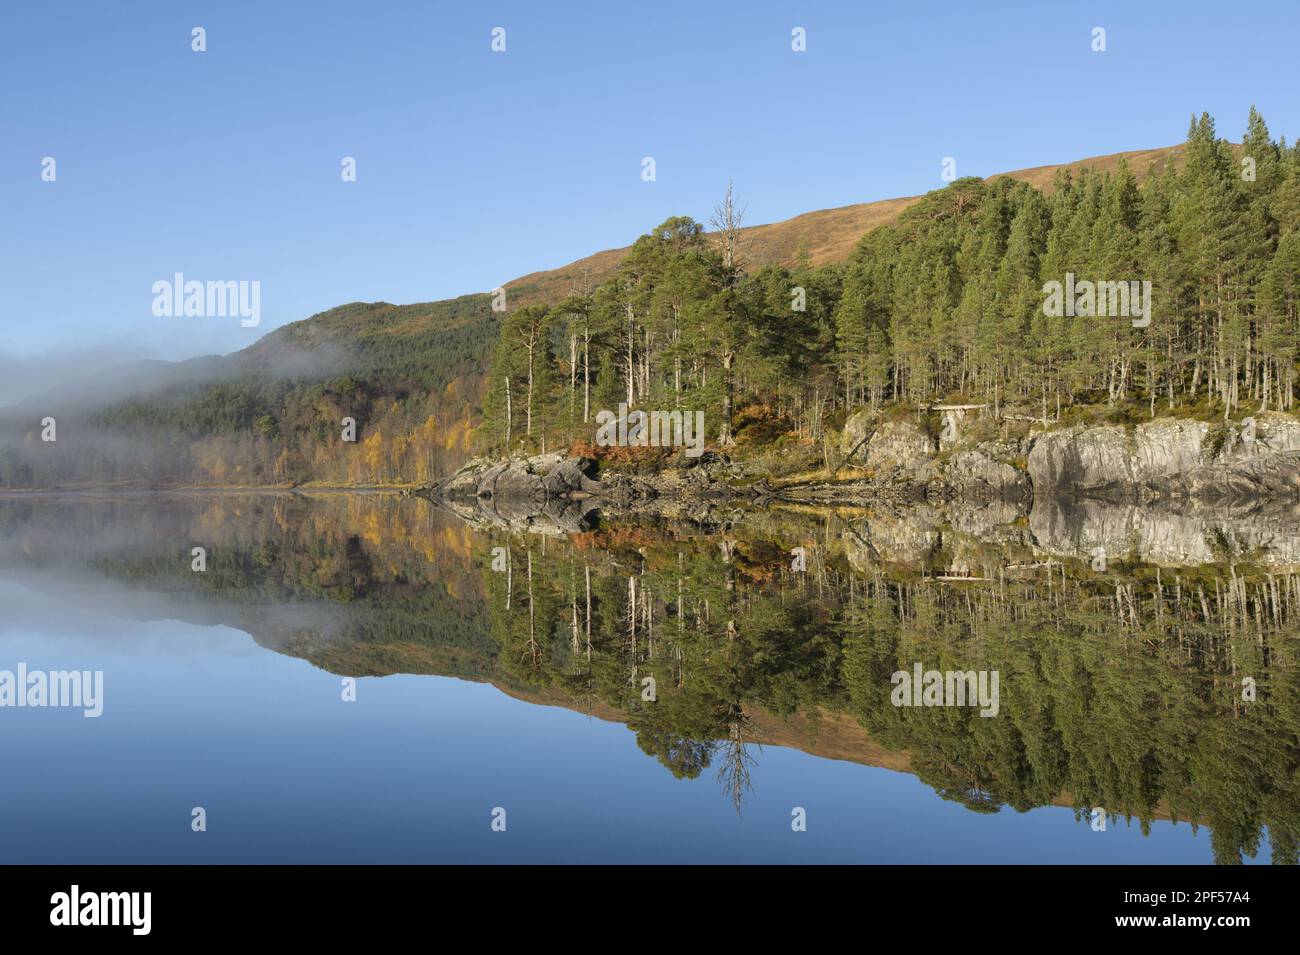 Blick auf das süßwasserloch mit Schottischen Pinienwäldern bei Sonnenaufgang im Nebel, Loch Beinn A' Mheadhoin, Glen Affric, Inverness-shire, Highlands, Schottland Stockfoto